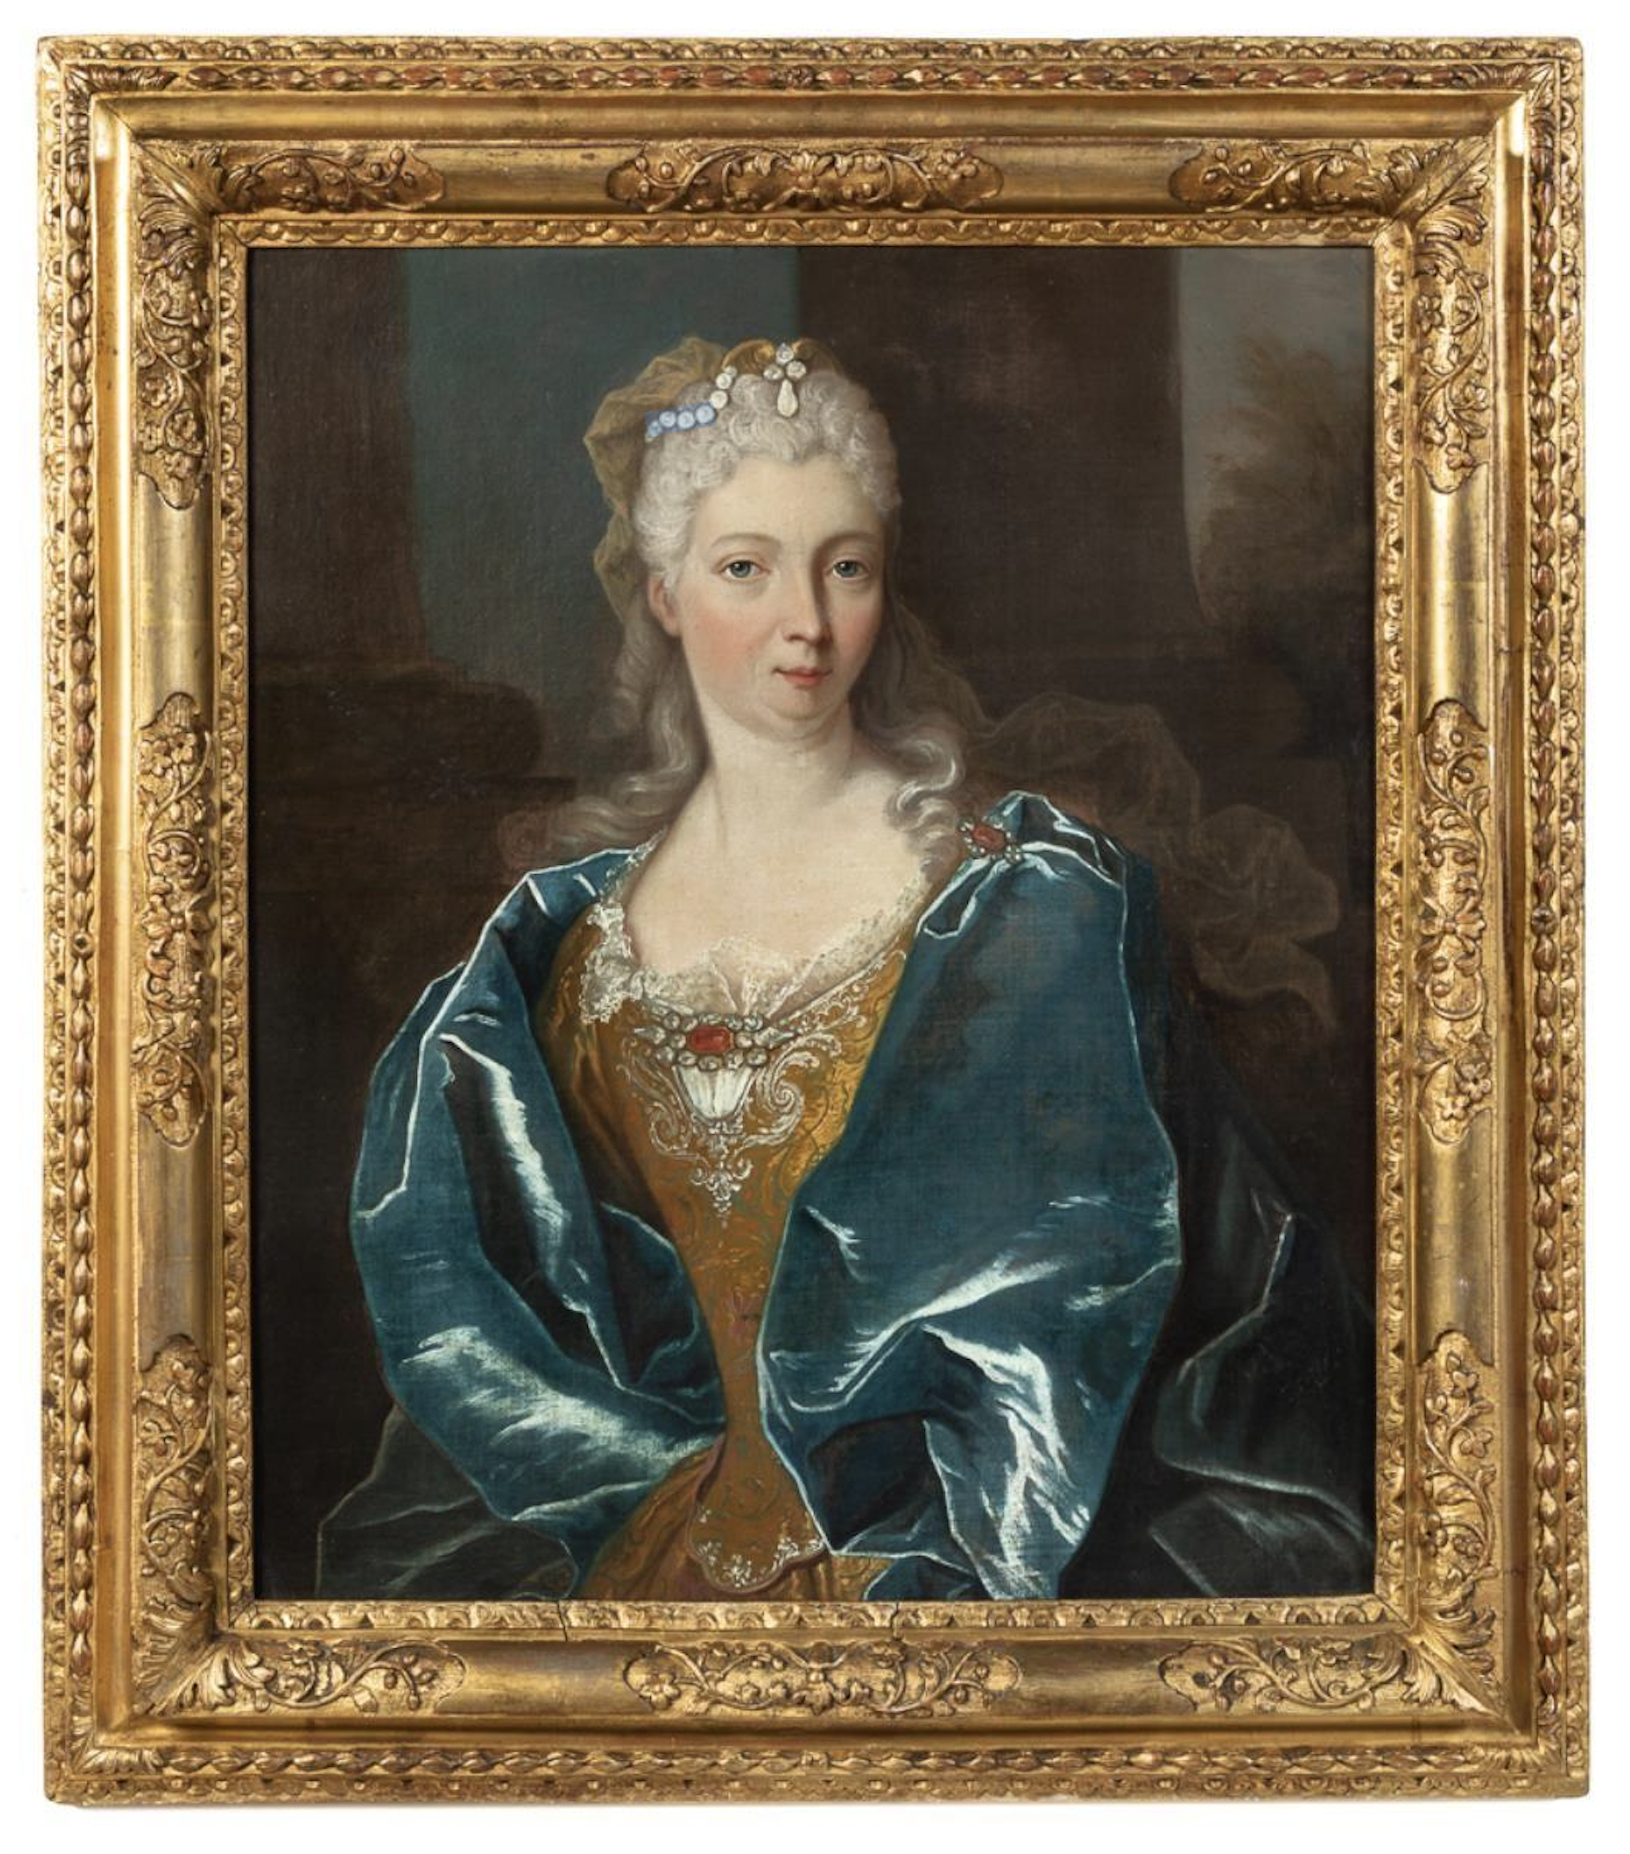 Portrait of a noble lady from the circle of Nicolas de Largilliere, est. $3,000-$5,000